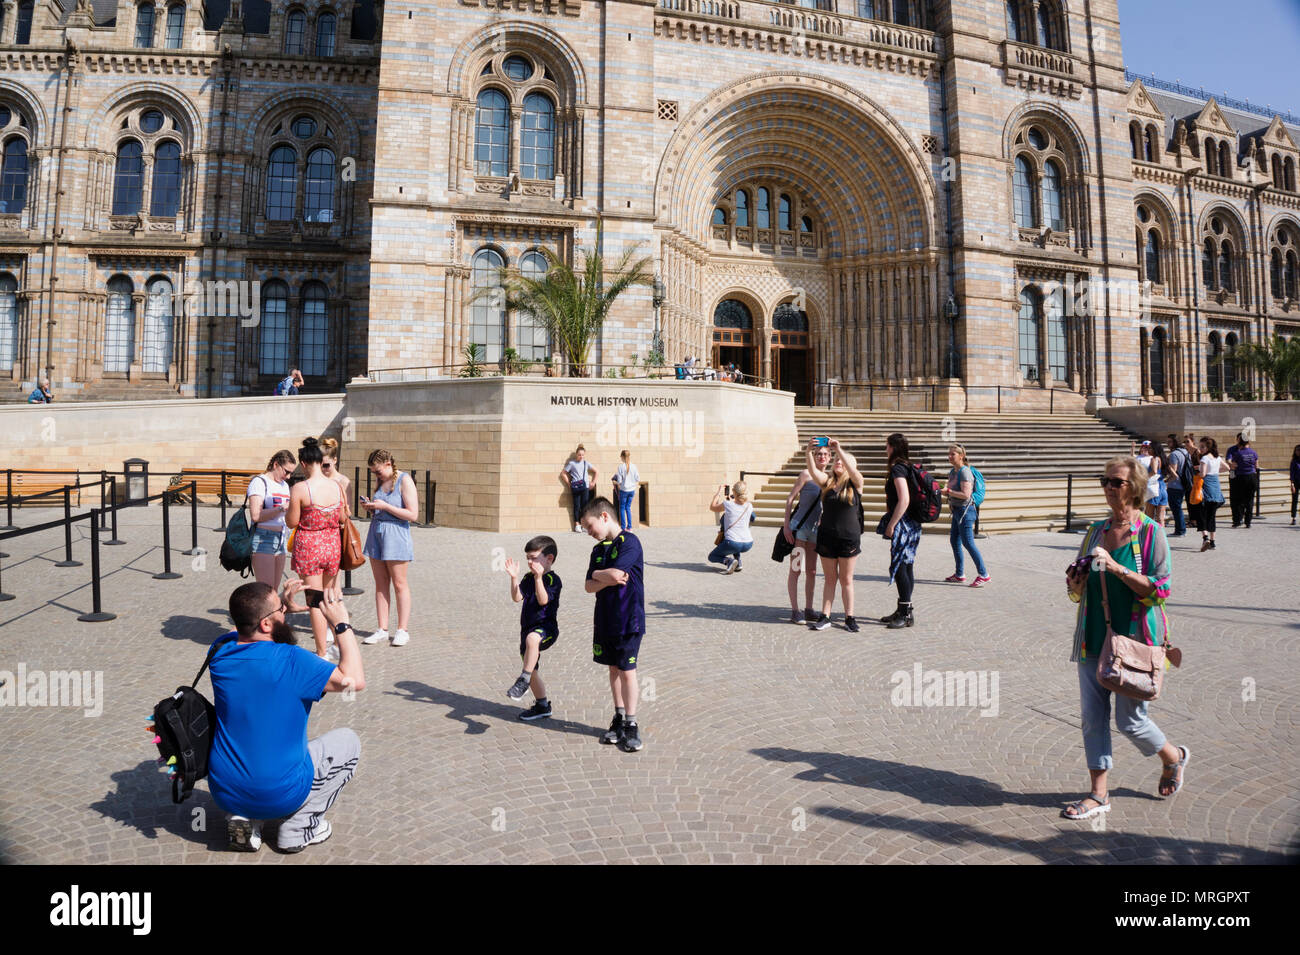 Musée d'Histoire Naturelle avec les visiteurs, entrée Londres Angleterre Banque D'Images